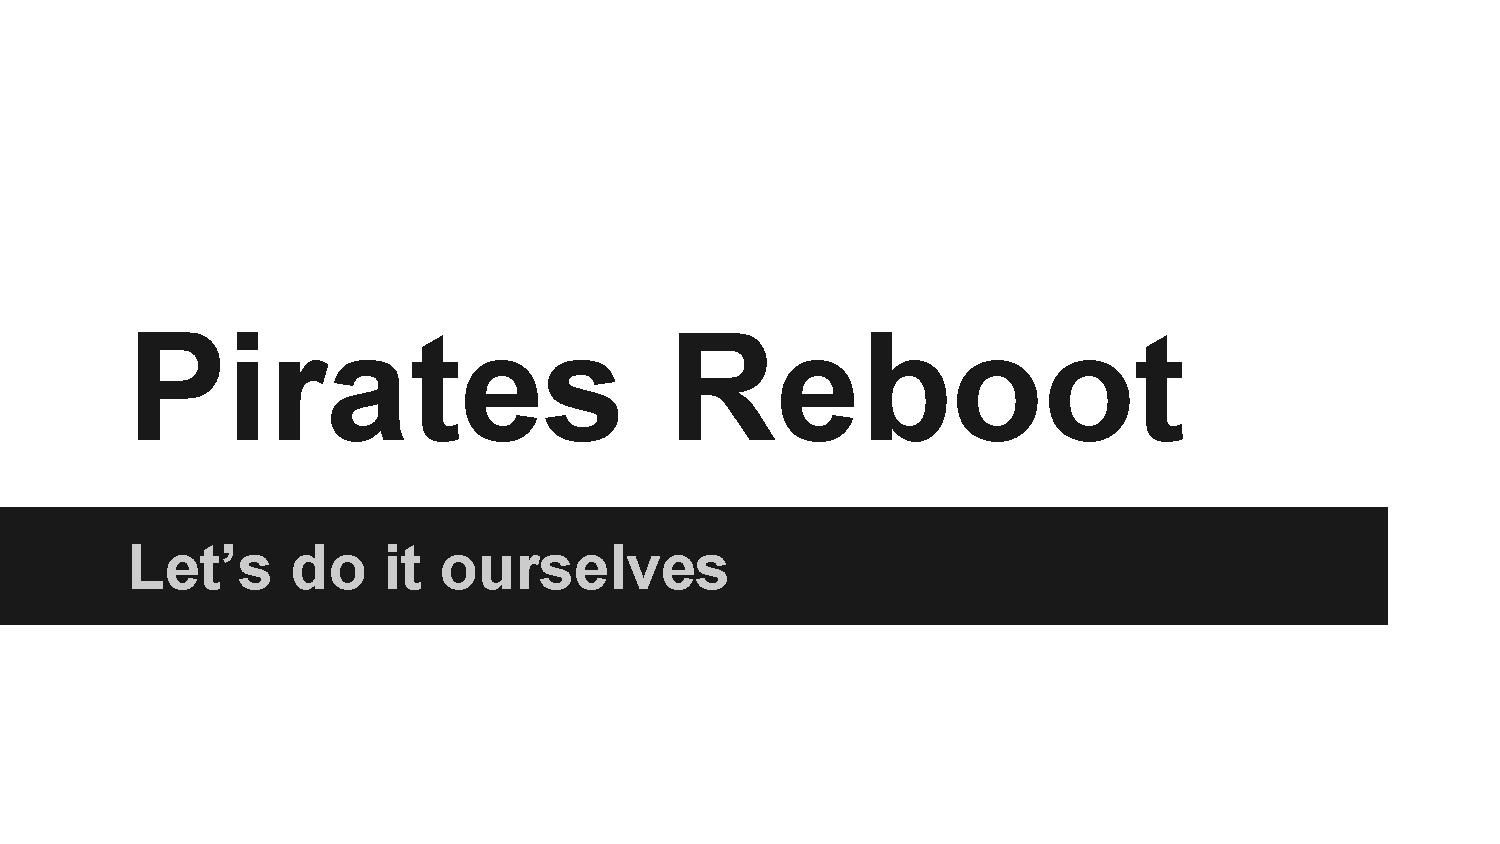 Pirates Reboot.pdf